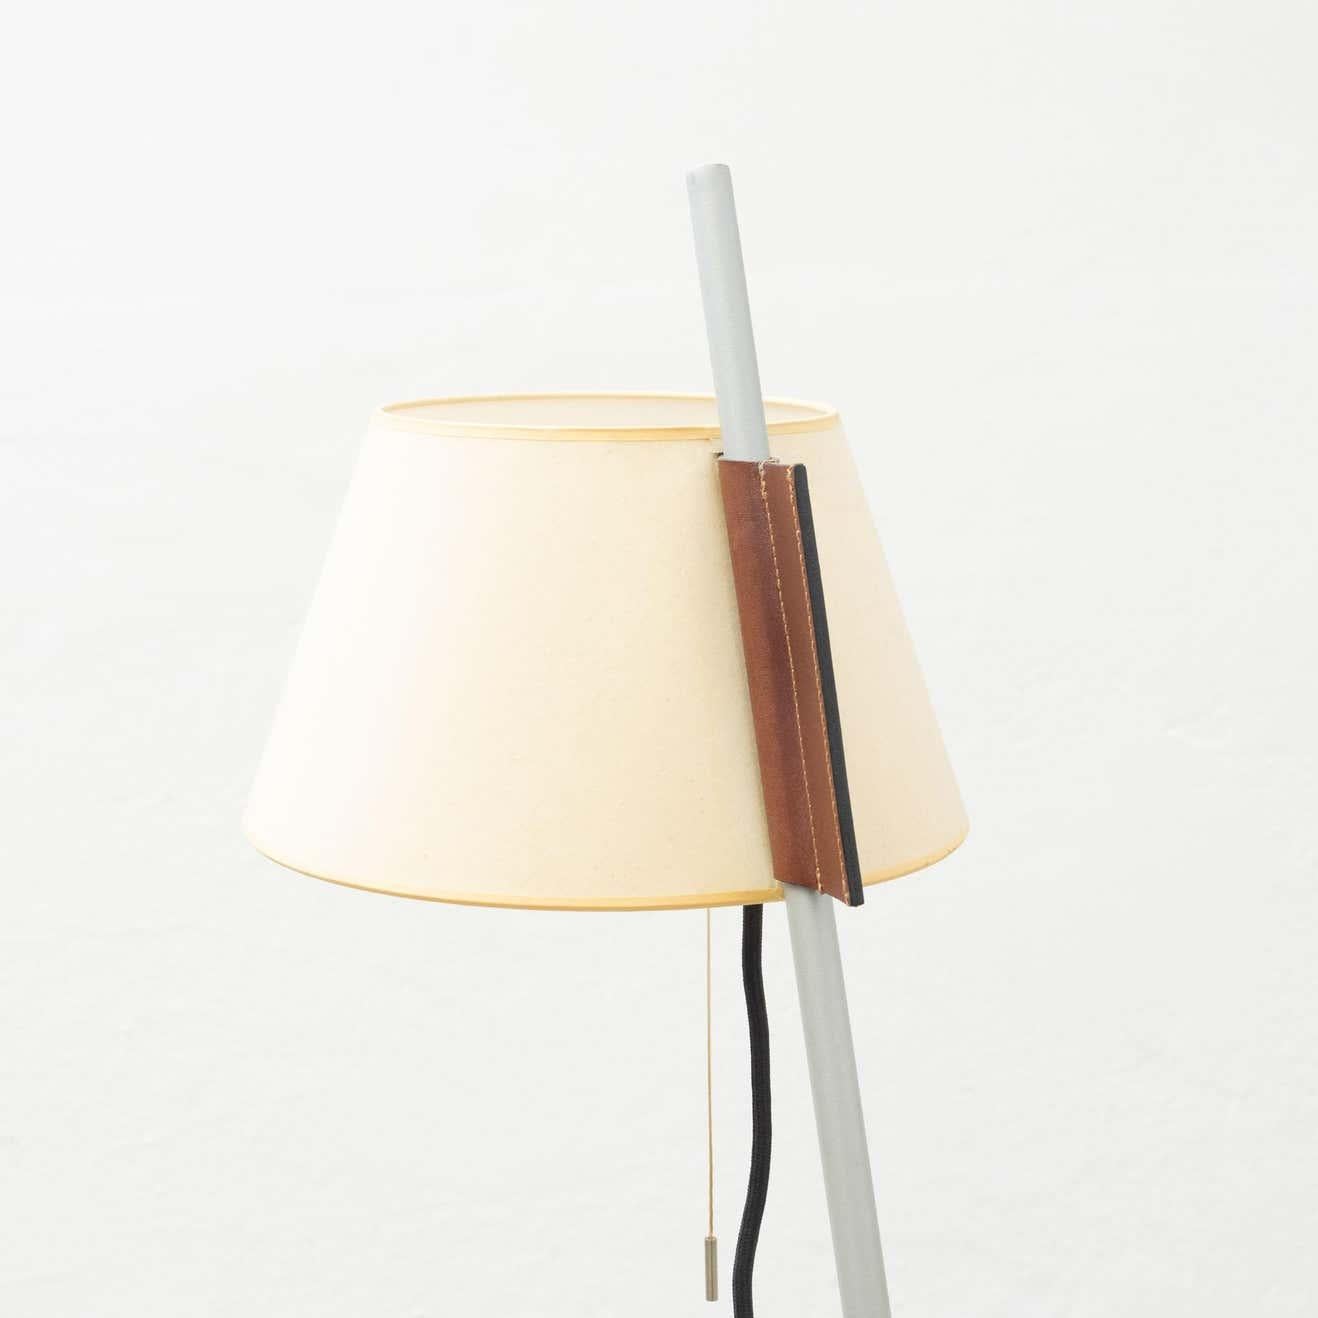 Estudio Blanch Simplisima Floor Lamp by Metalarte, circa 1970 For Sale 2